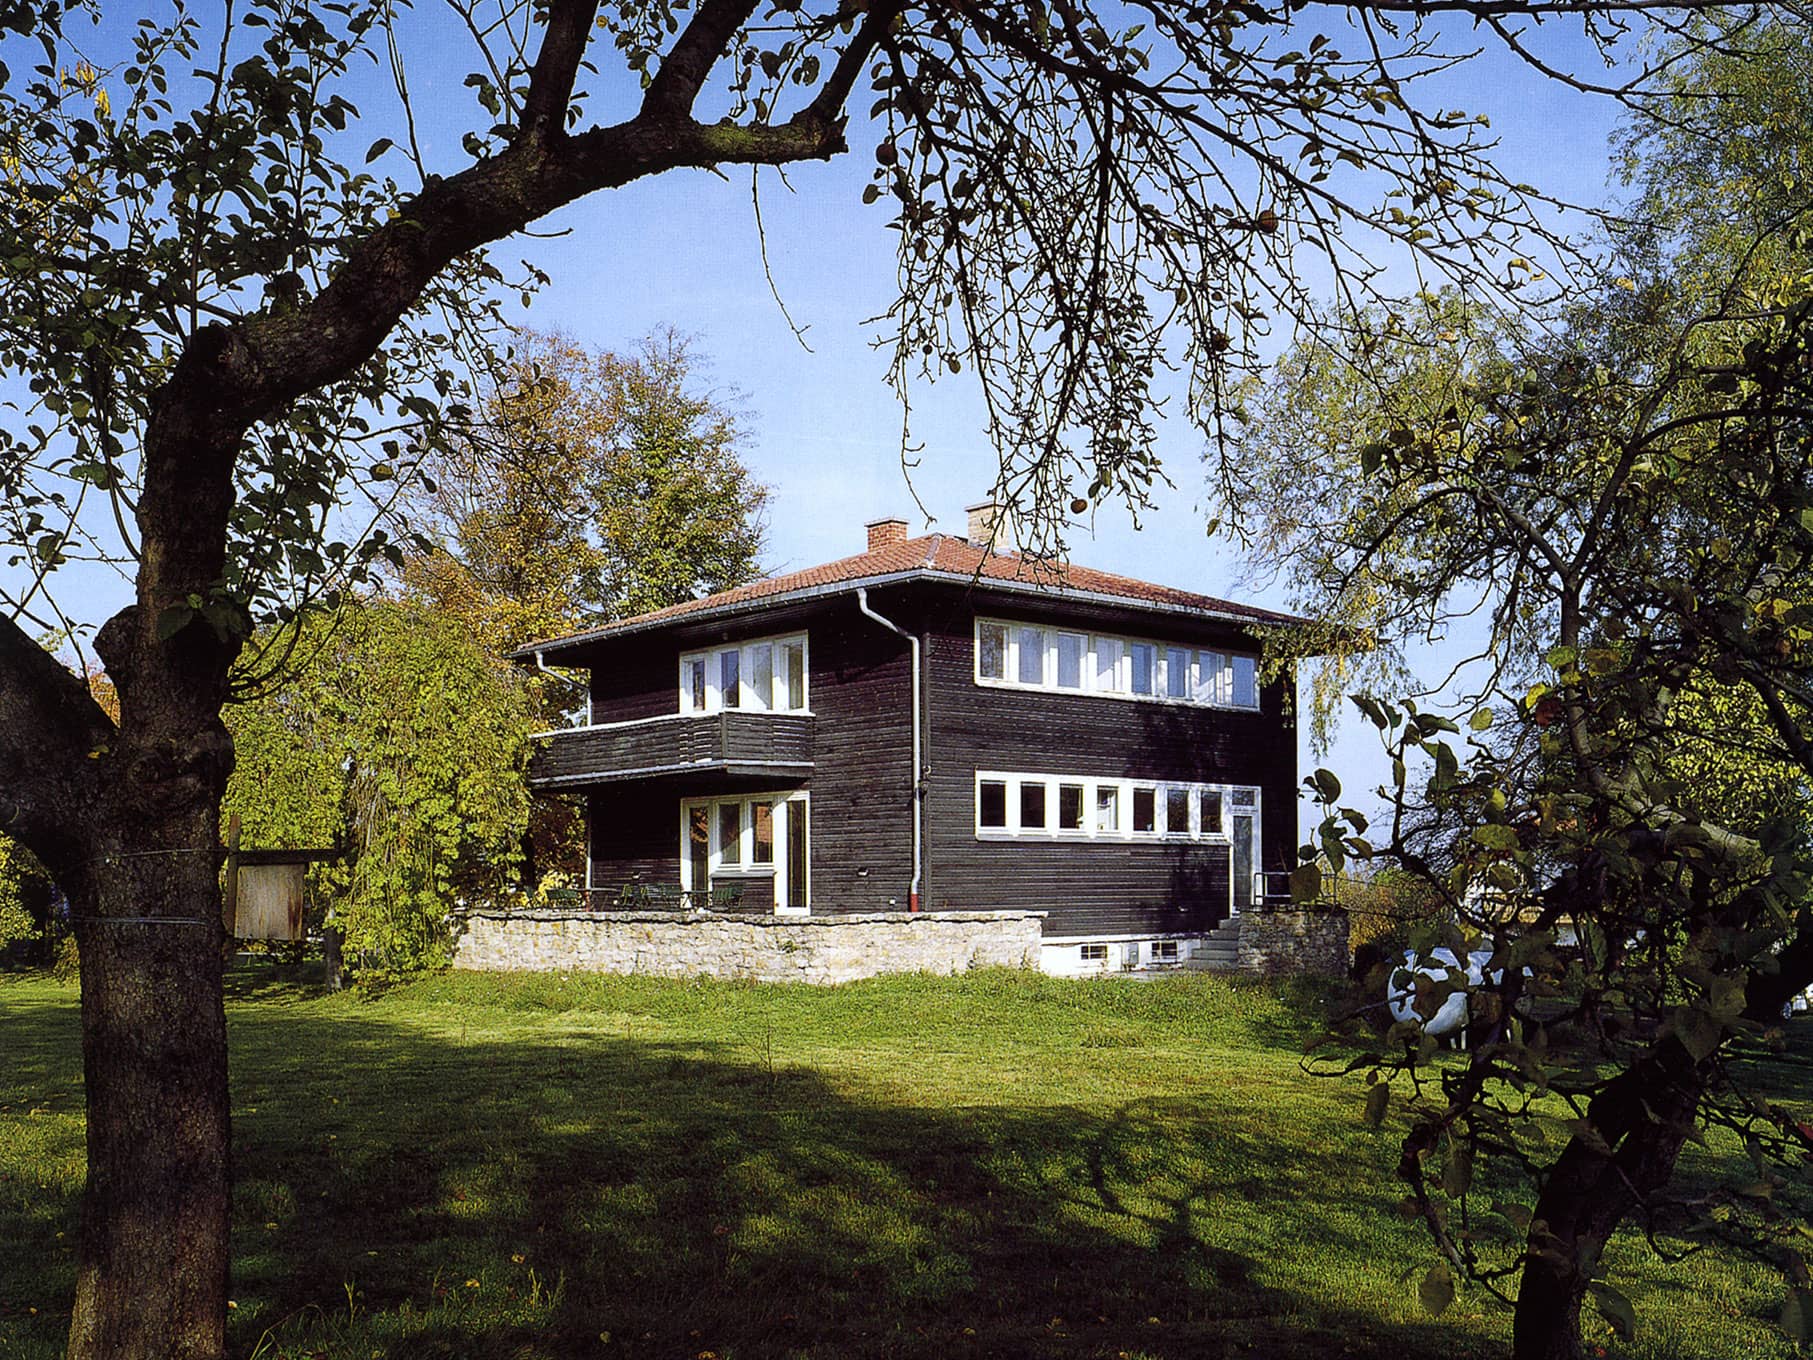 Neufert House , Weimar seen from the Garden